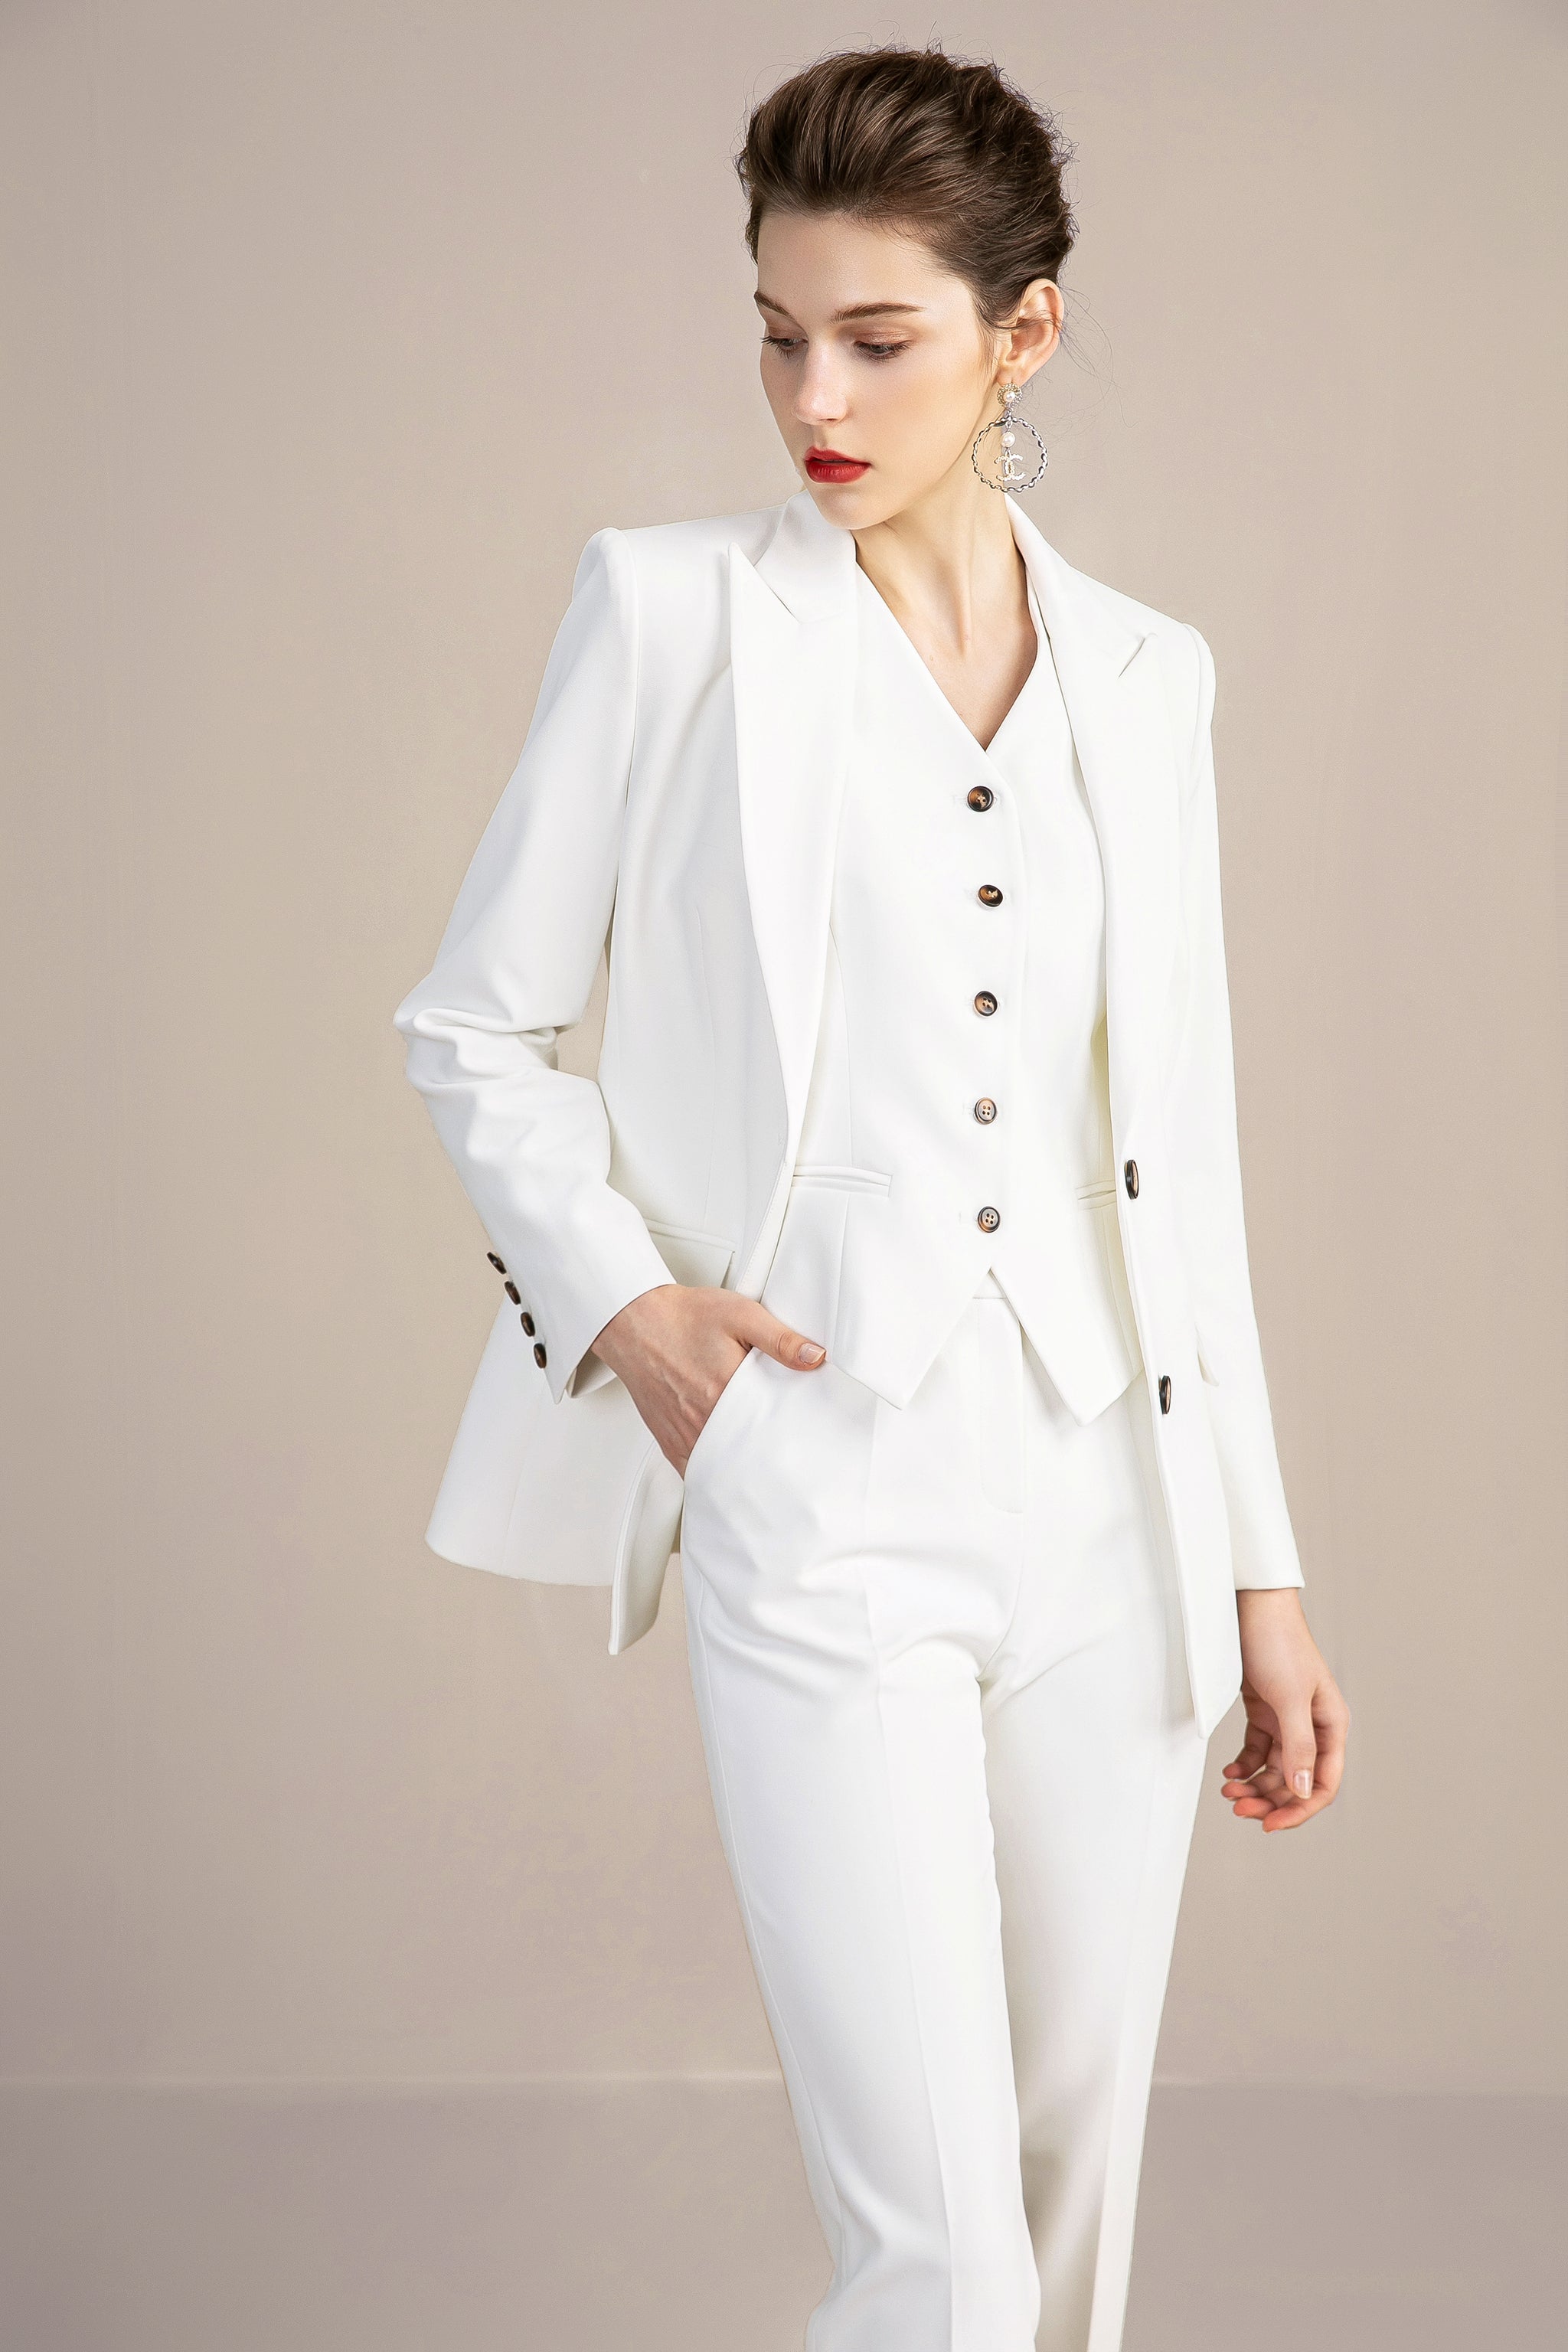 Women's Three Piece Pant Suit | White Pant Suits Online | FashionByTeresa